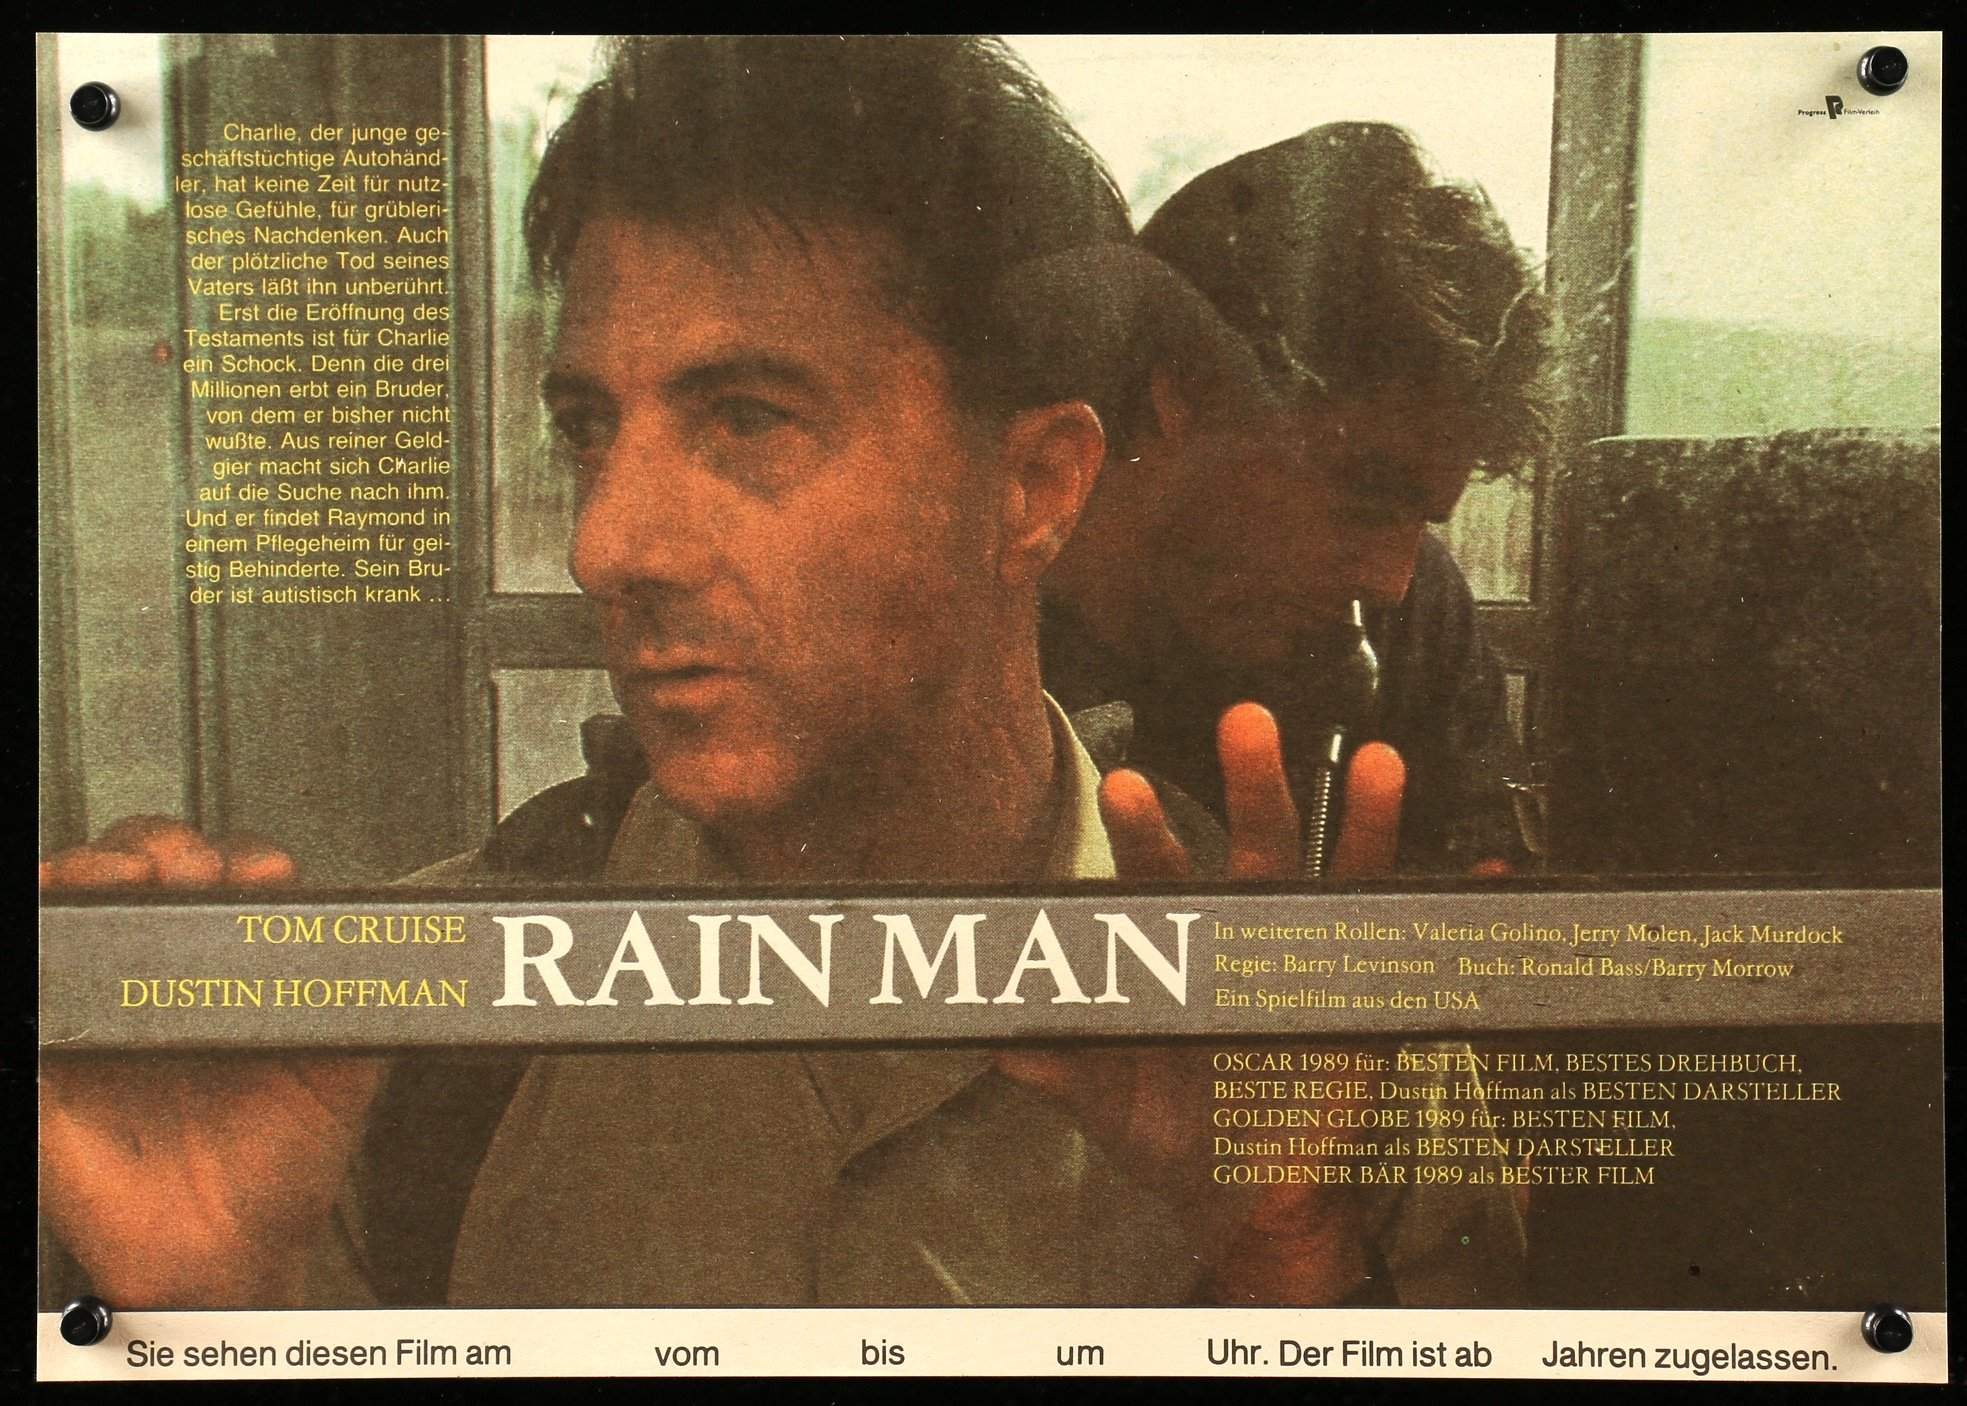 E o Oscar foi para: Rain Man